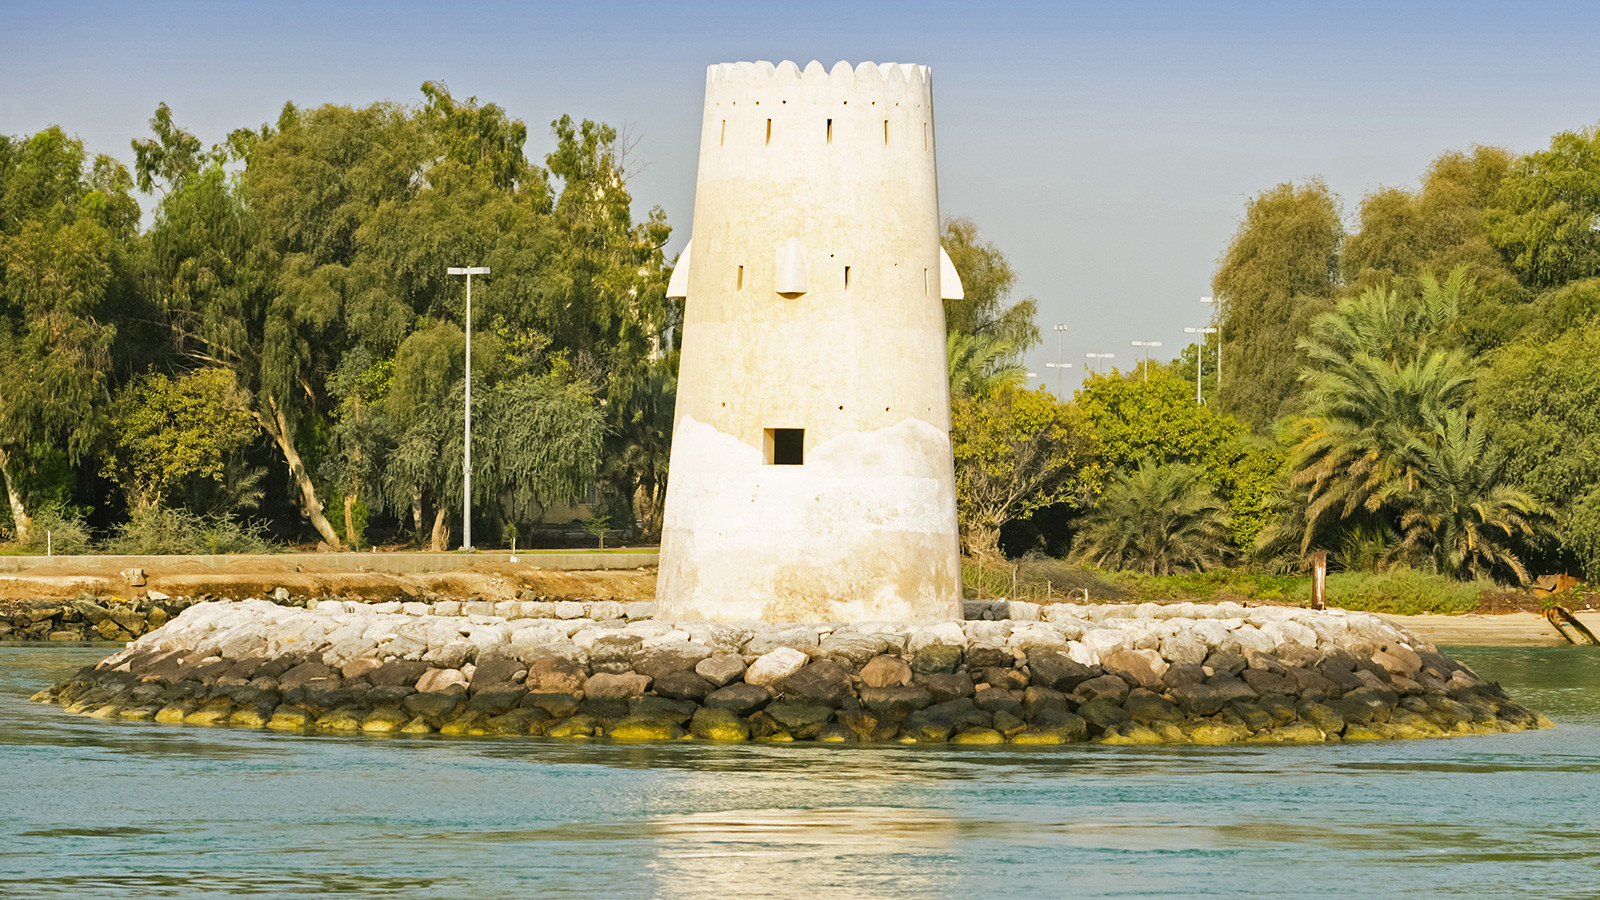 Pháo đài Maqta: Pháo đài có từ thế kỷ 18 này ở cửa ngõ vào hòn đảo chính của Abu Dhabi, được xây dựng bằng các vật liệu cơ bản như đá san hô, đá bãi biển và cát. Ảnh: CNN.